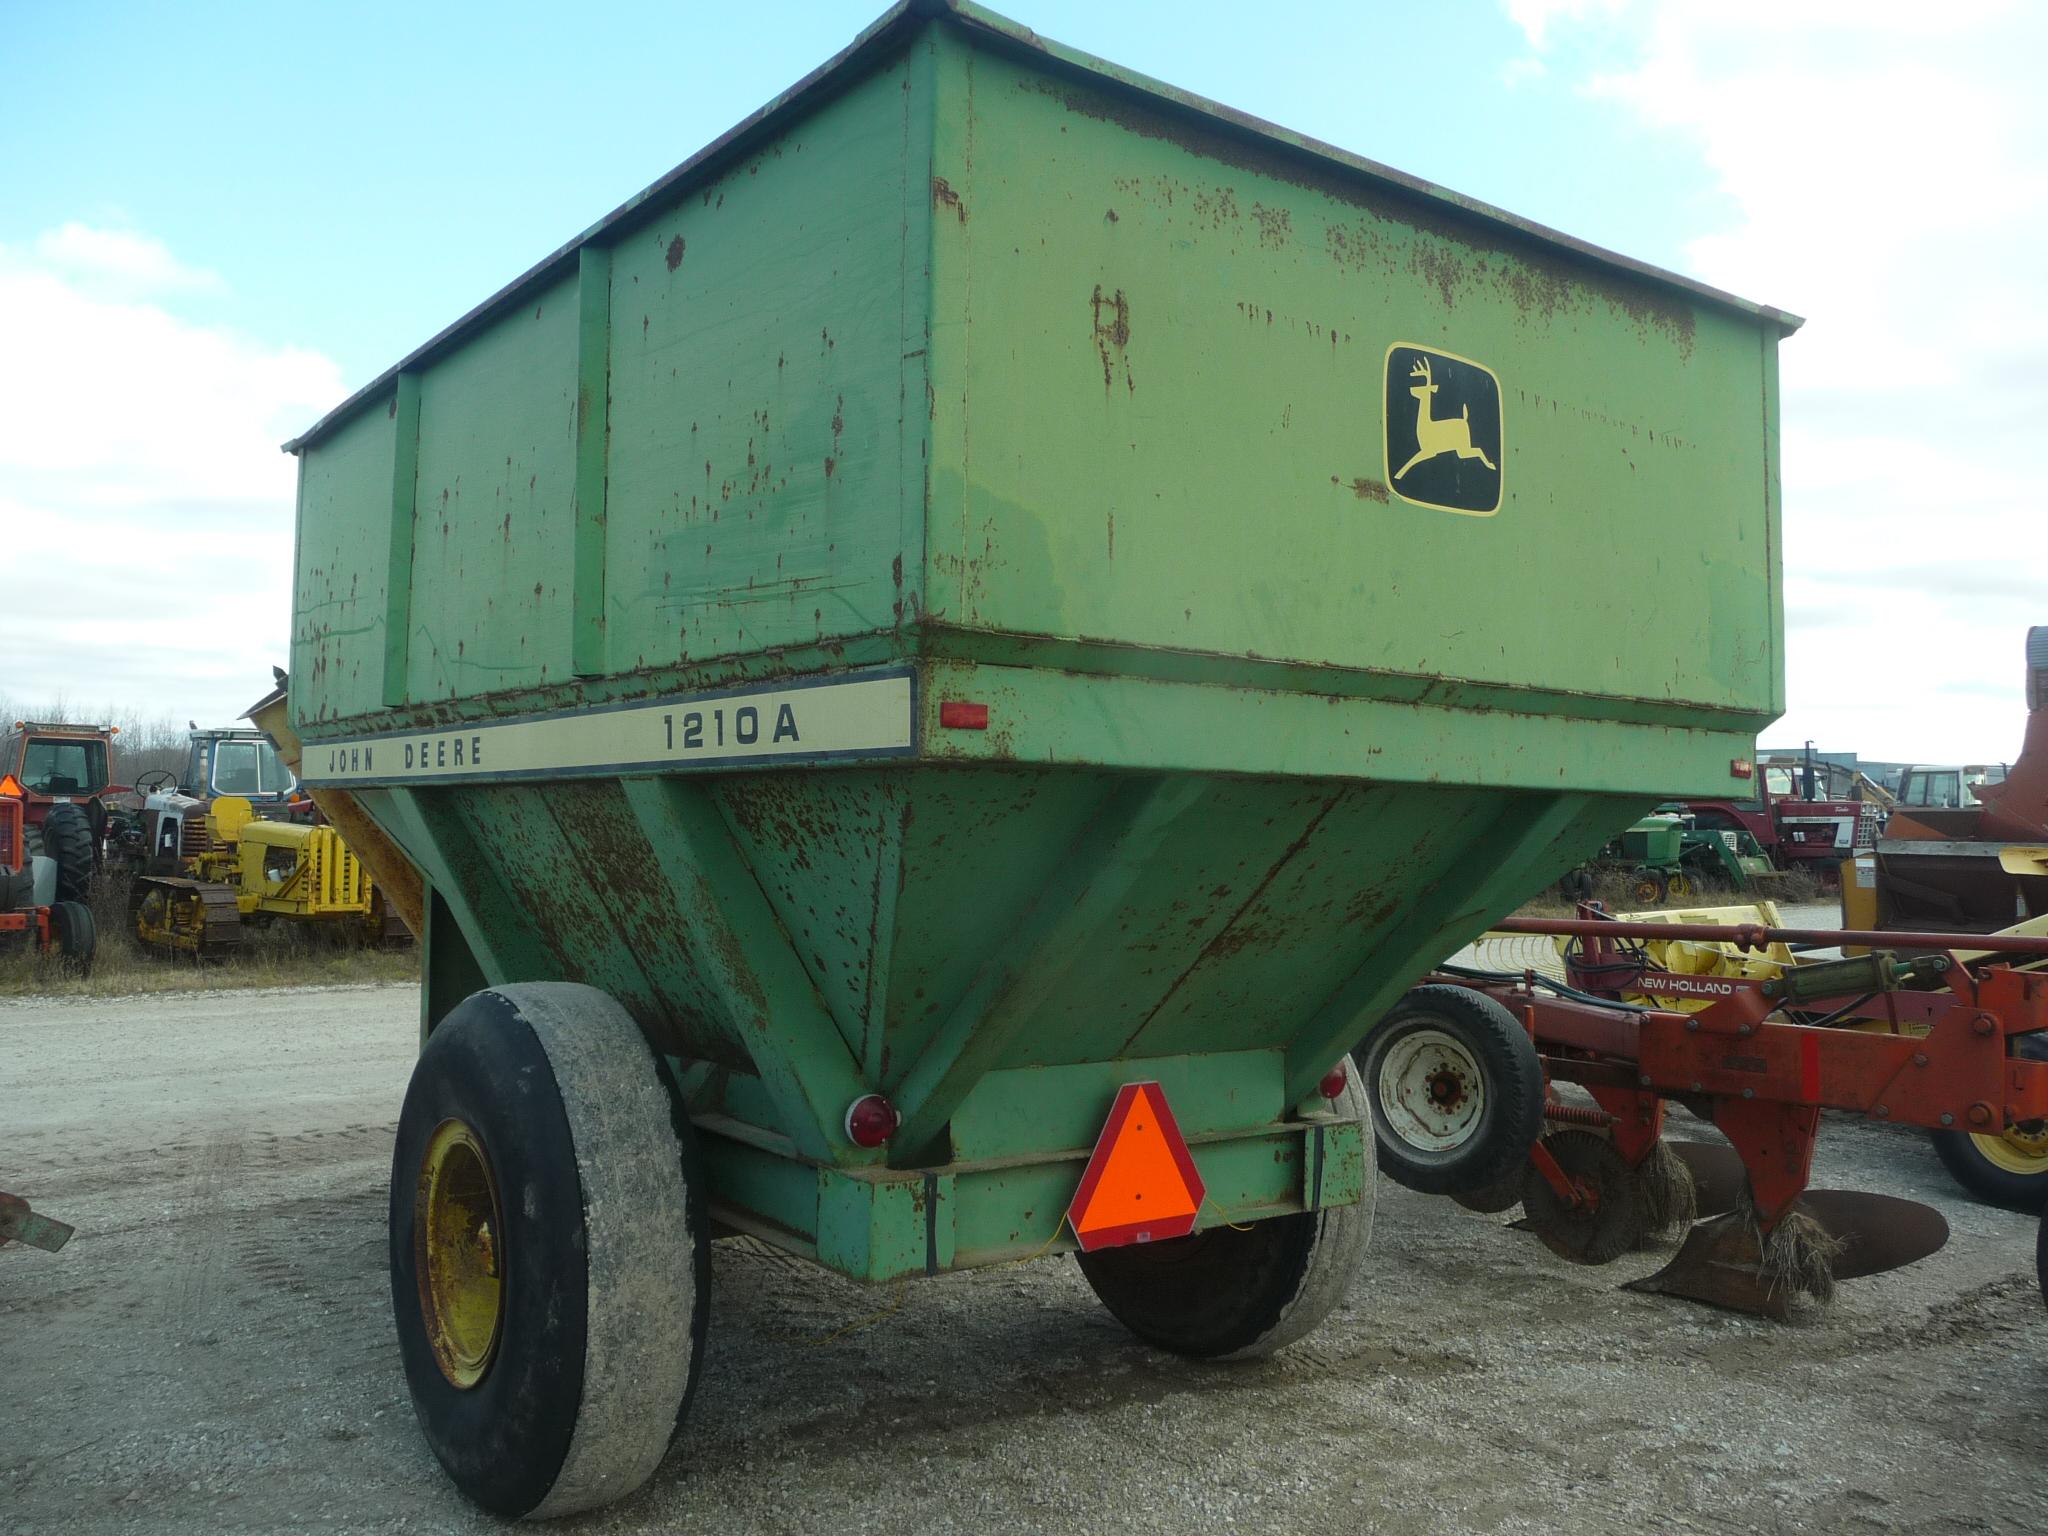 JD 1210A grain cart, "Needs Gear Box Attention!"